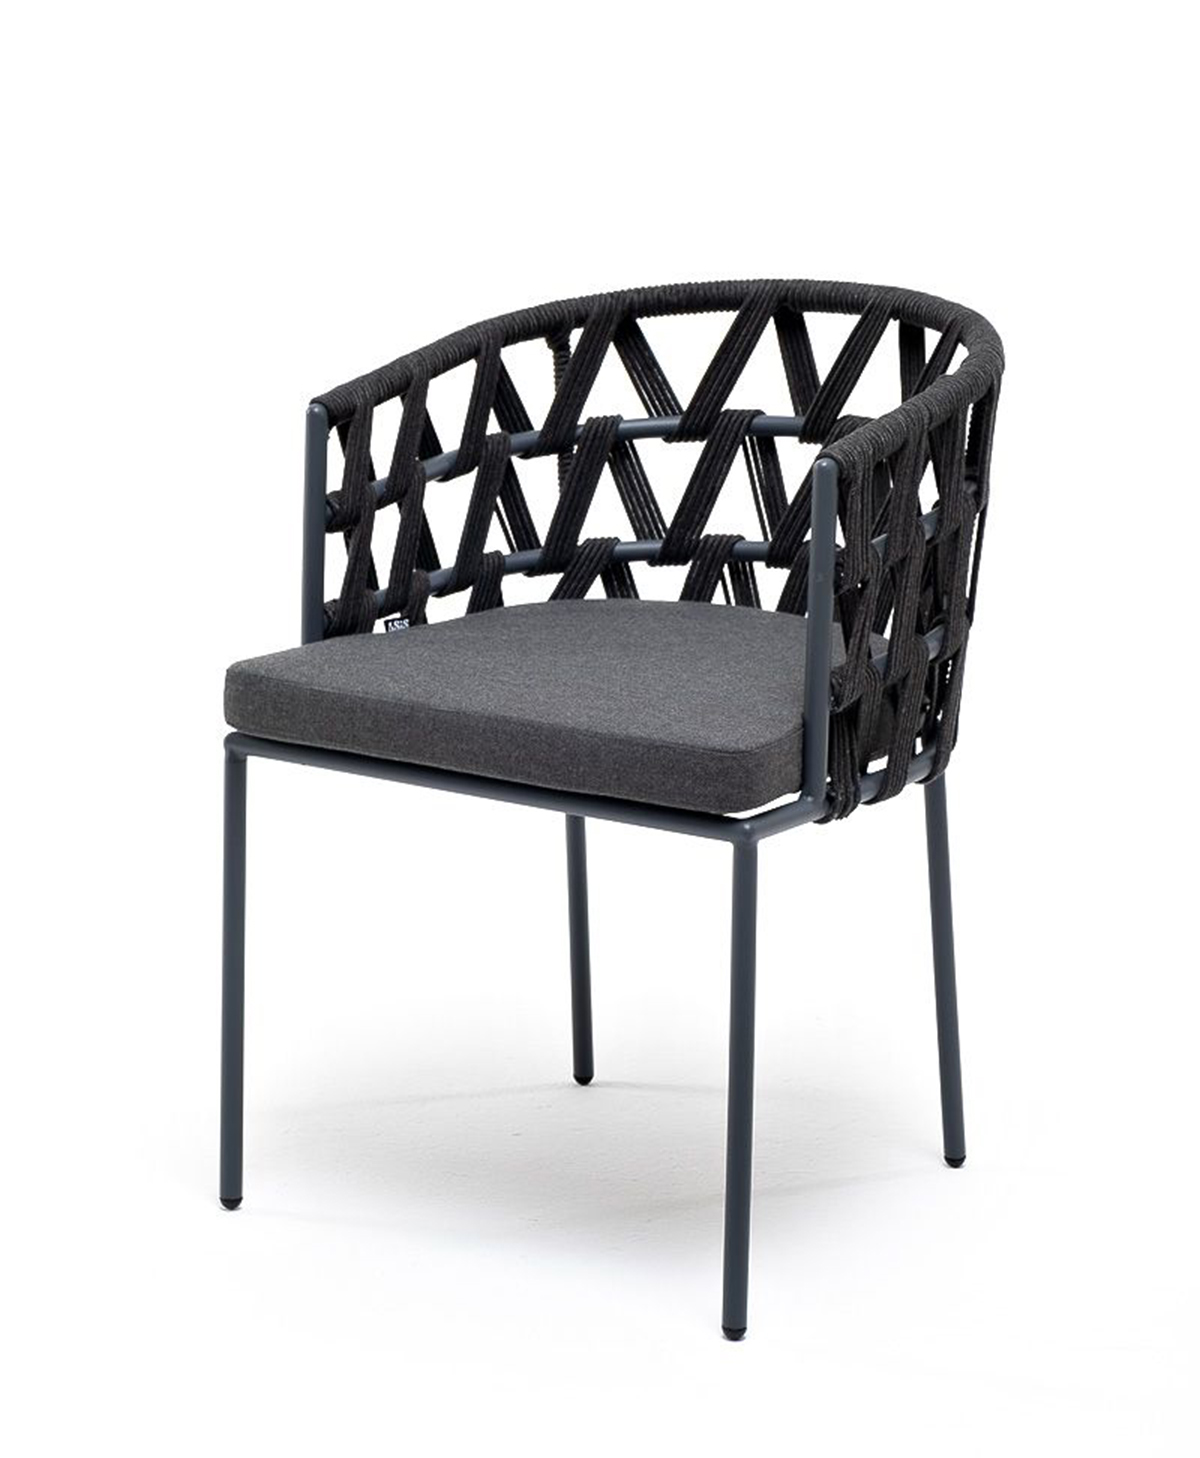 Плетеный стул из роупа Диего темно-серый плетеный стул лион из роупа темно серый